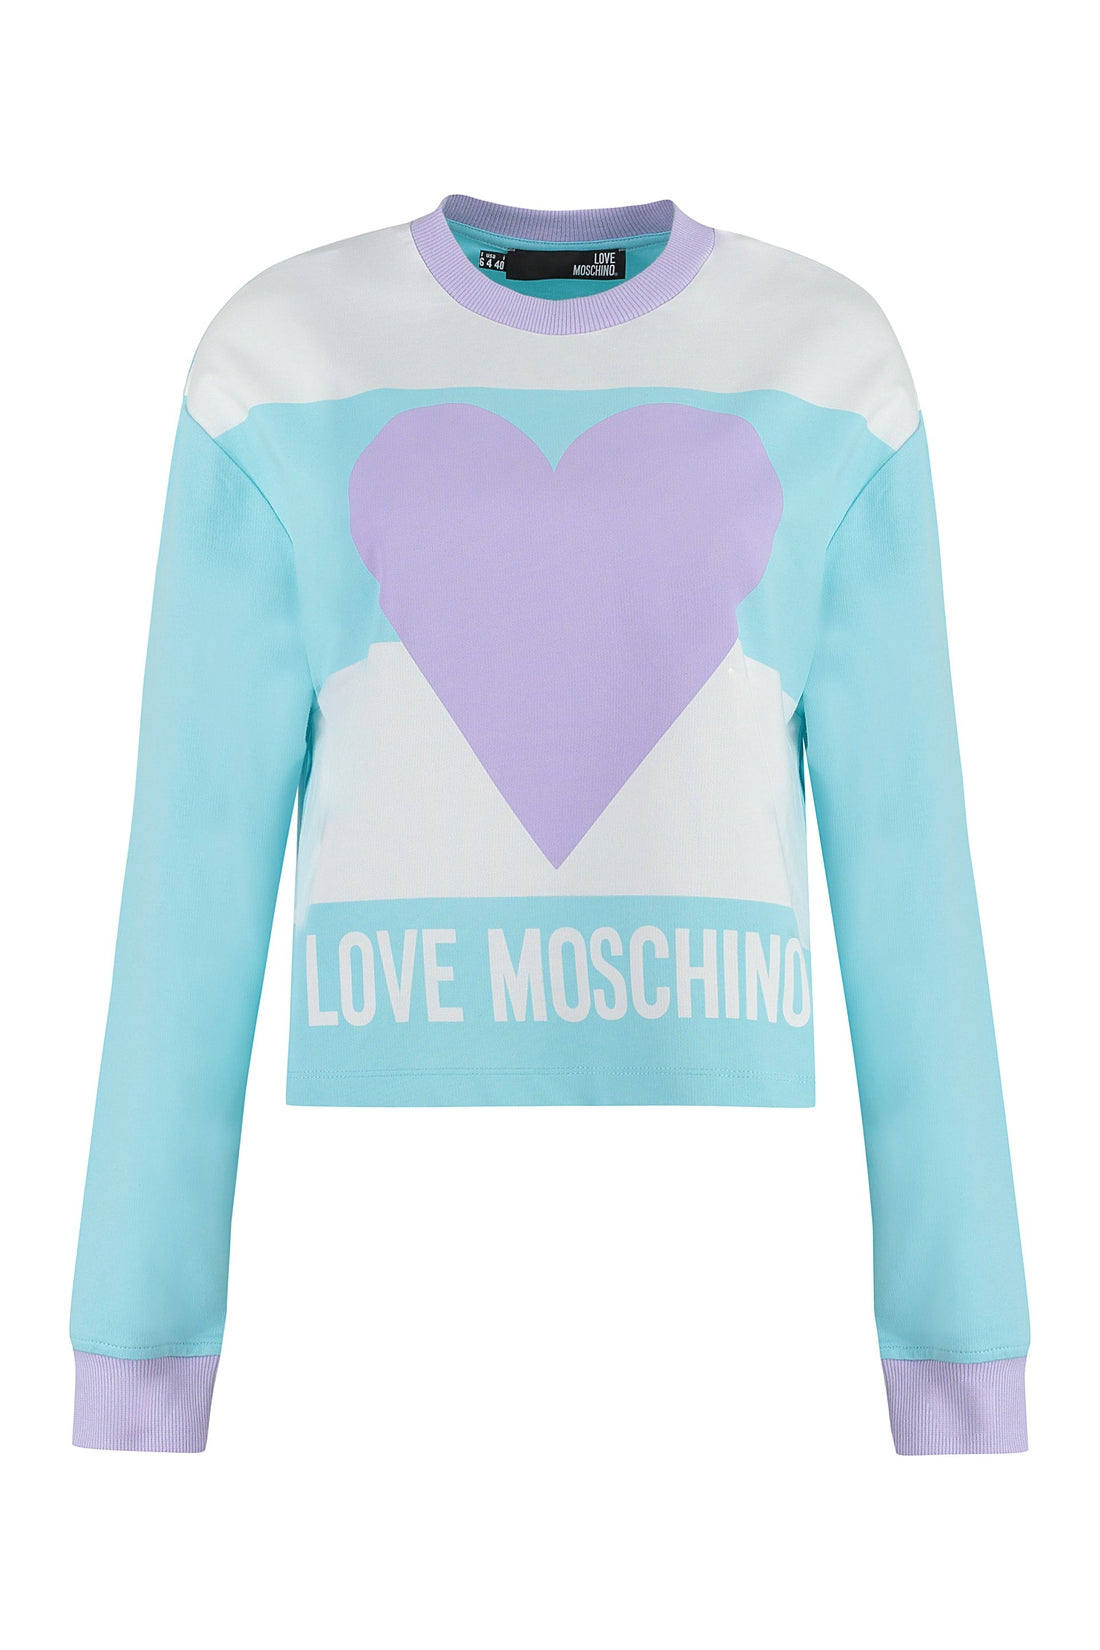 Love Moschino-OUTLET-SALE-Cotton crew-neck sweatshirt-ARCHIVIST